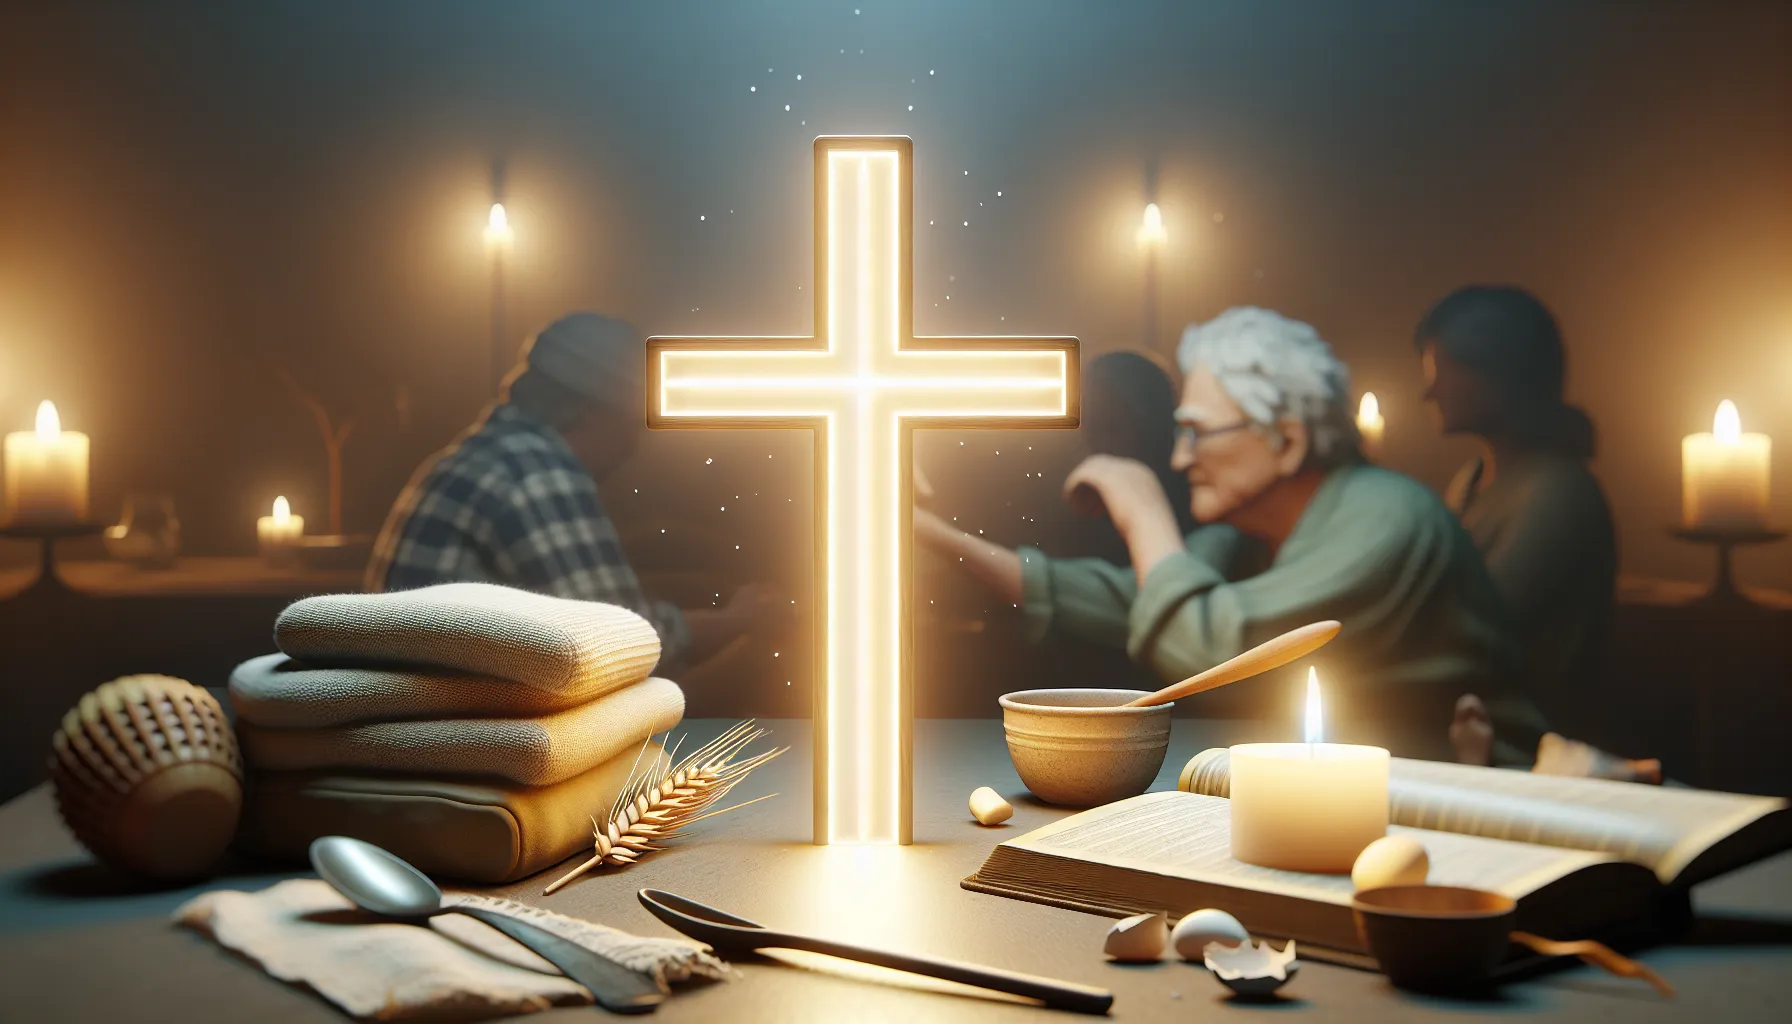 Representación gráfica de una cruz iluminada simbolizando la salvación cristiana en la vida cotidiana.